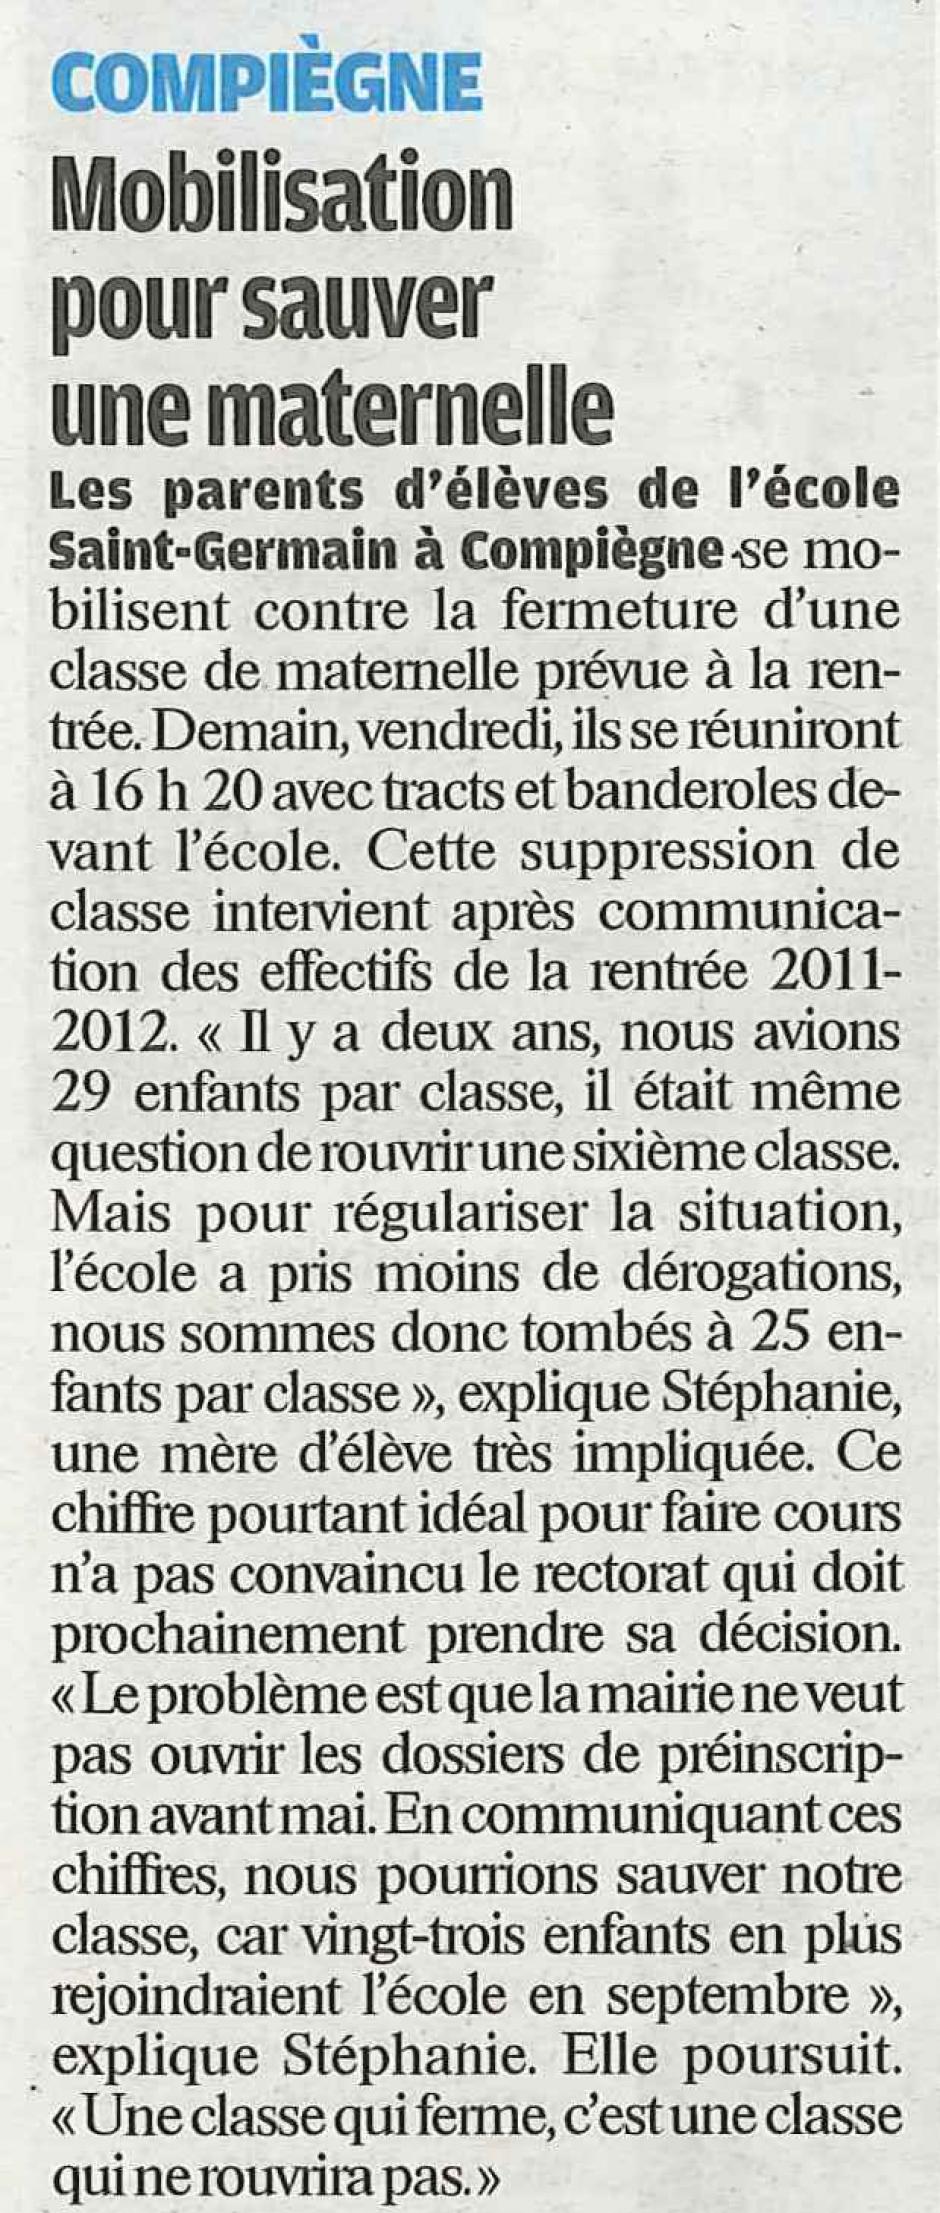 20120209-LeP-Compiègne-Mobilisation pour sauver une maternelle